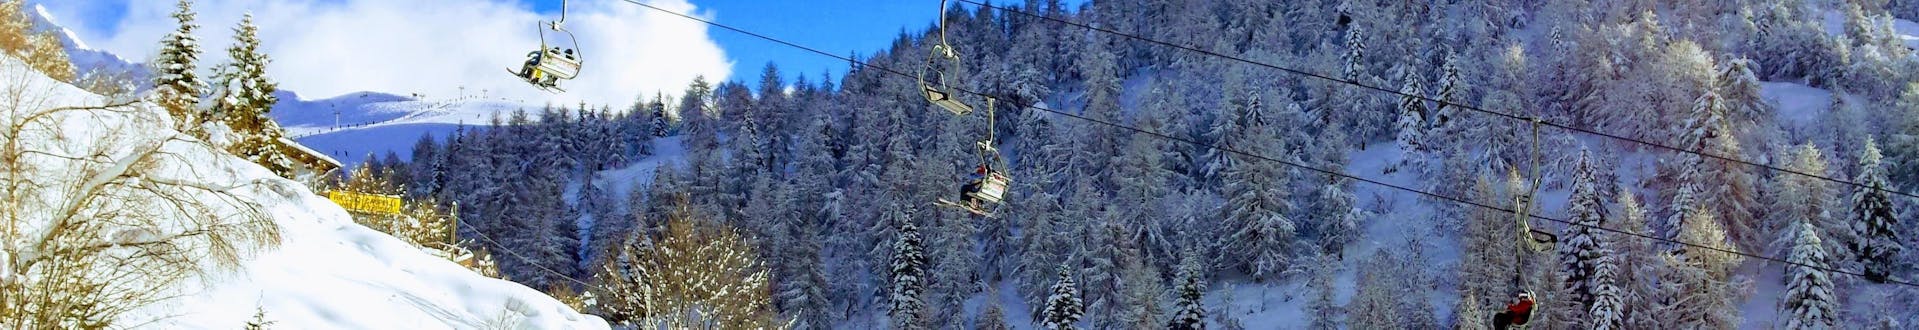 Téléski montant les pentes dans la station de ski de Piani di Bobbio, en Italie.